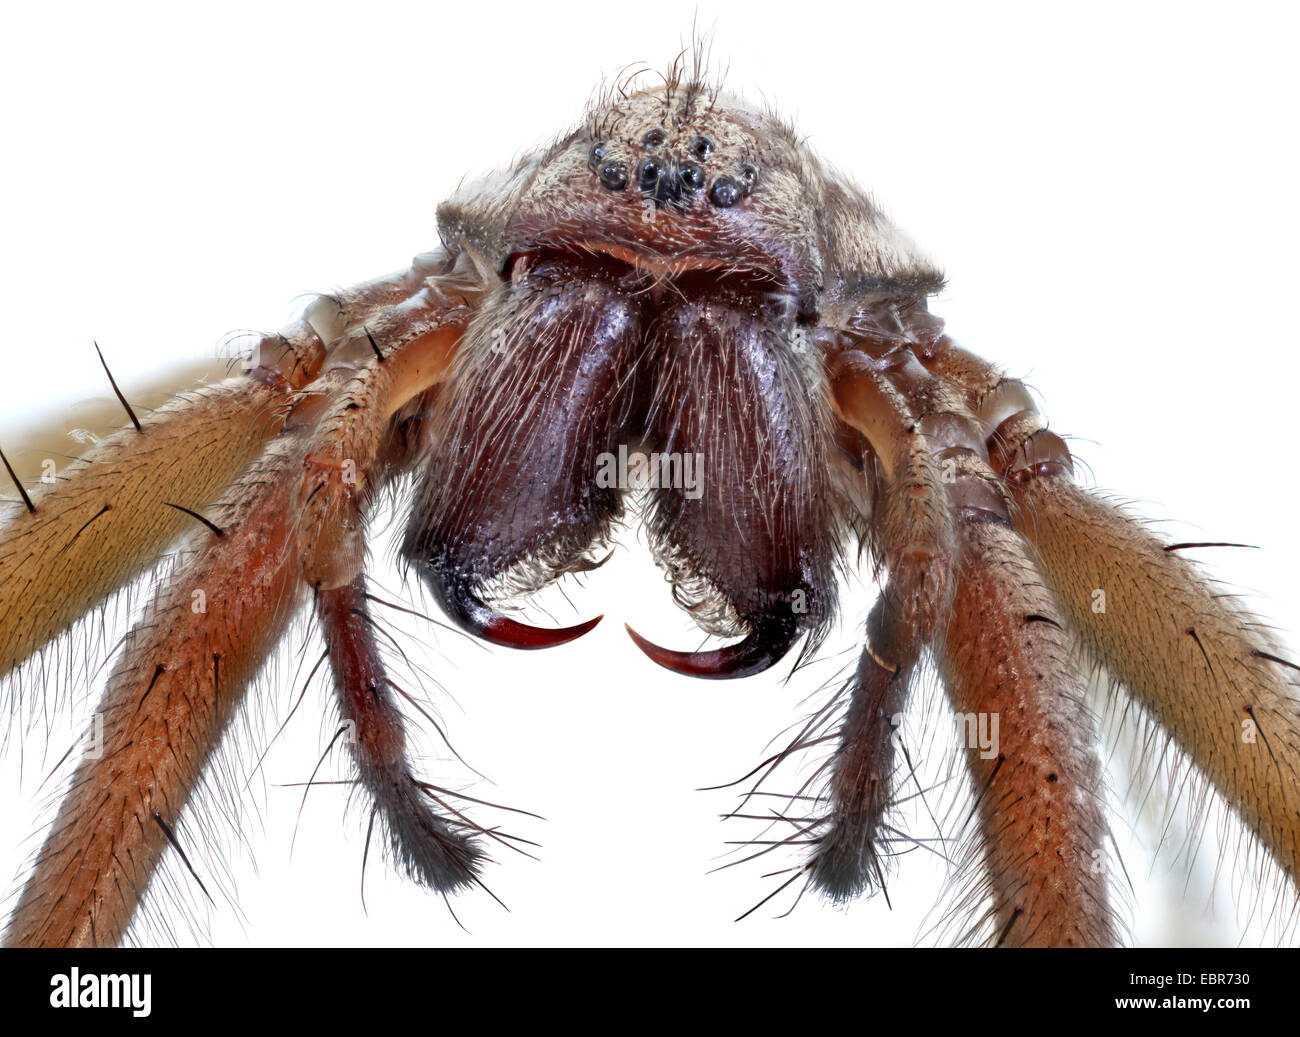 giant European house spider, giant house spider, larger house spider, cobweb spider (Tegenaria gigantea, Tegenaria atrica), macro shot, frontal Stock Photo